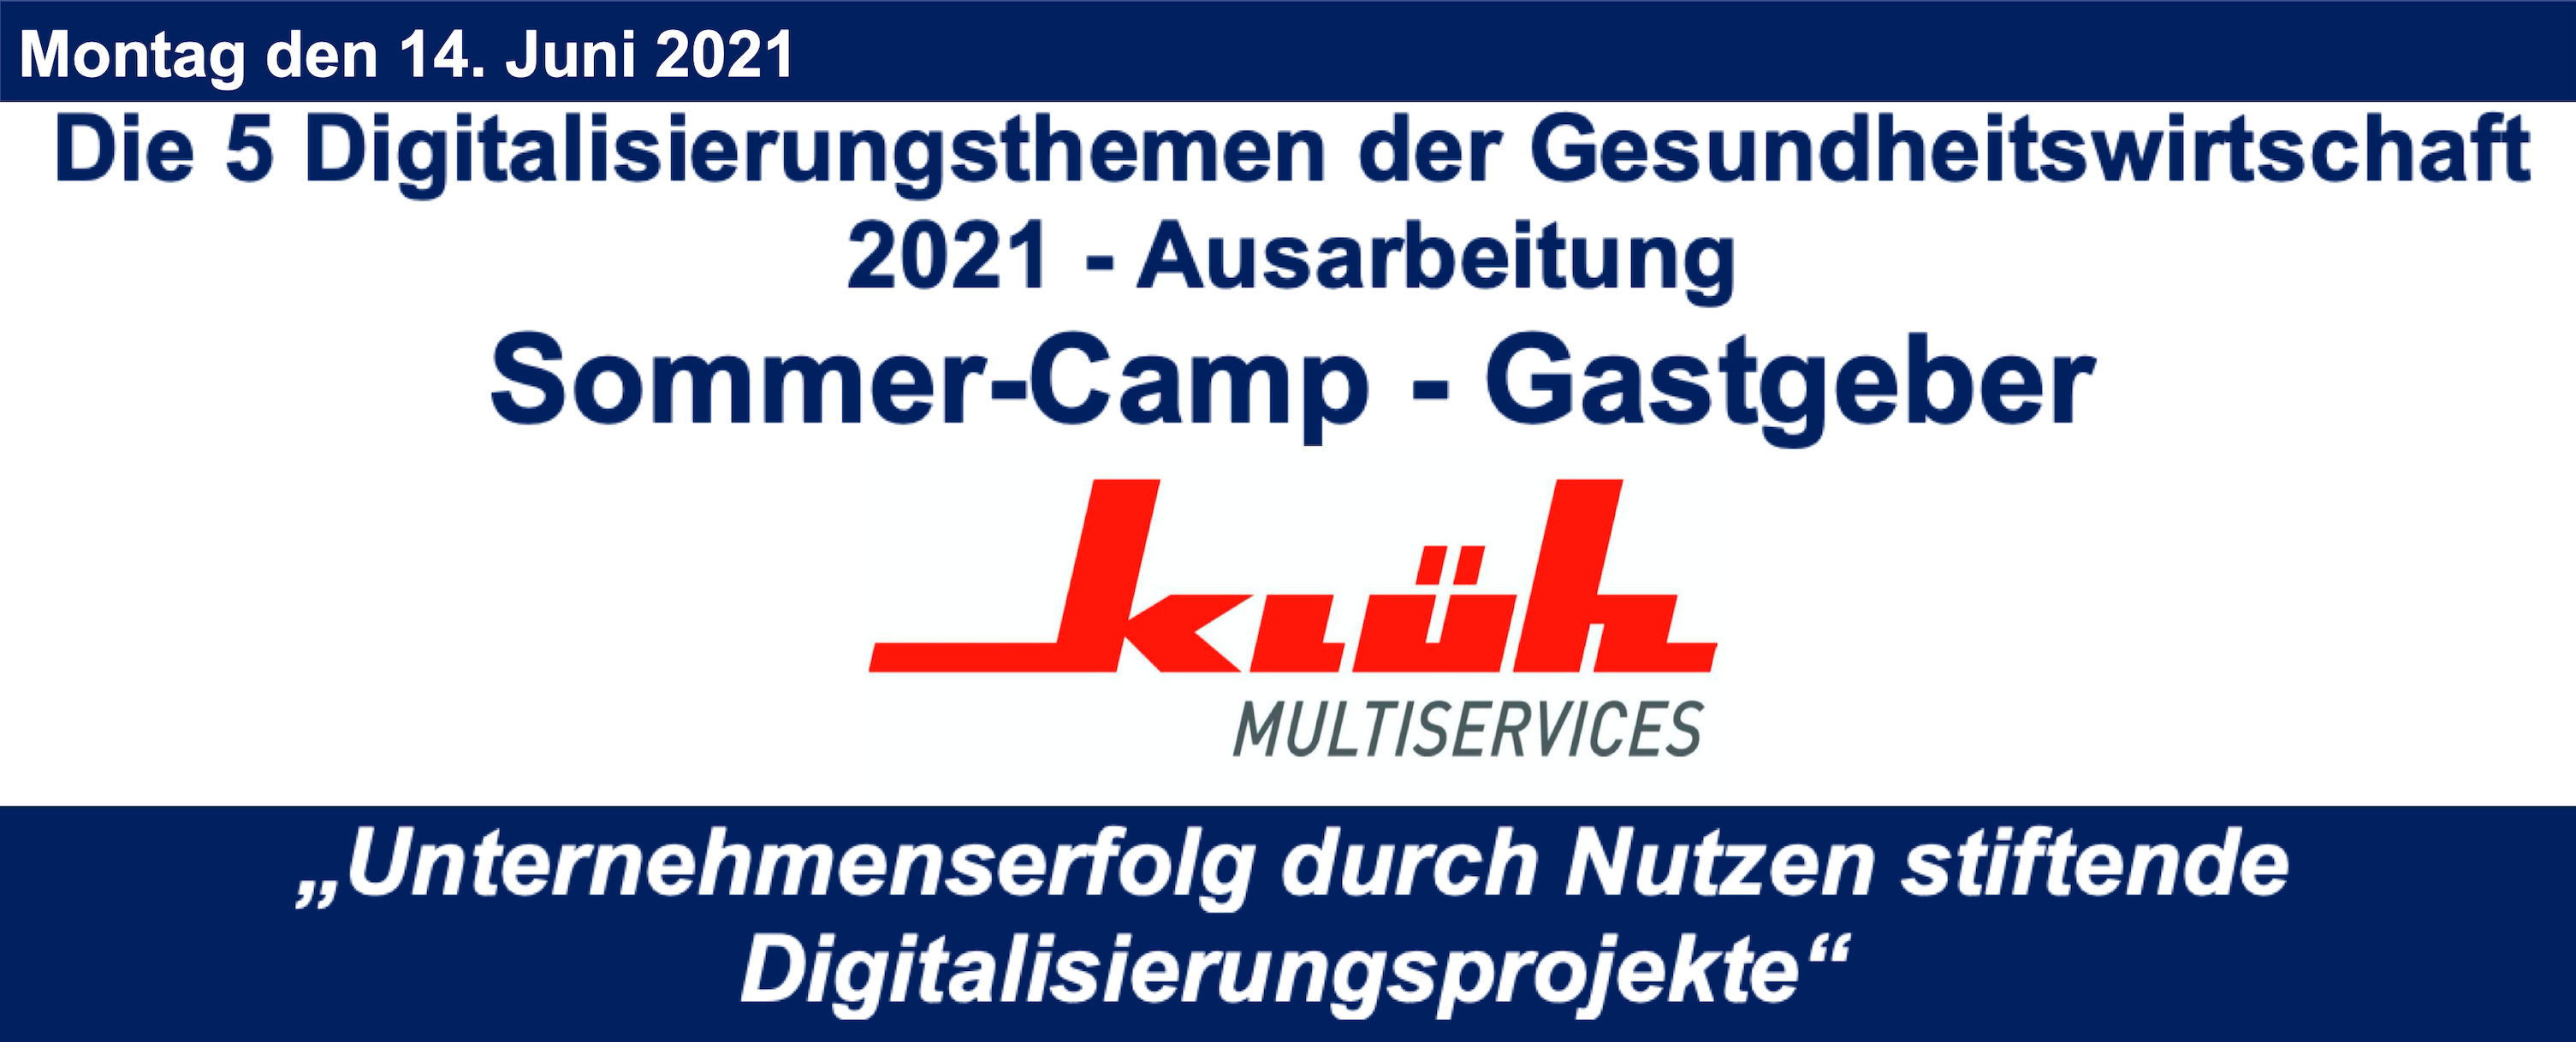 Sommer-Camp Digital